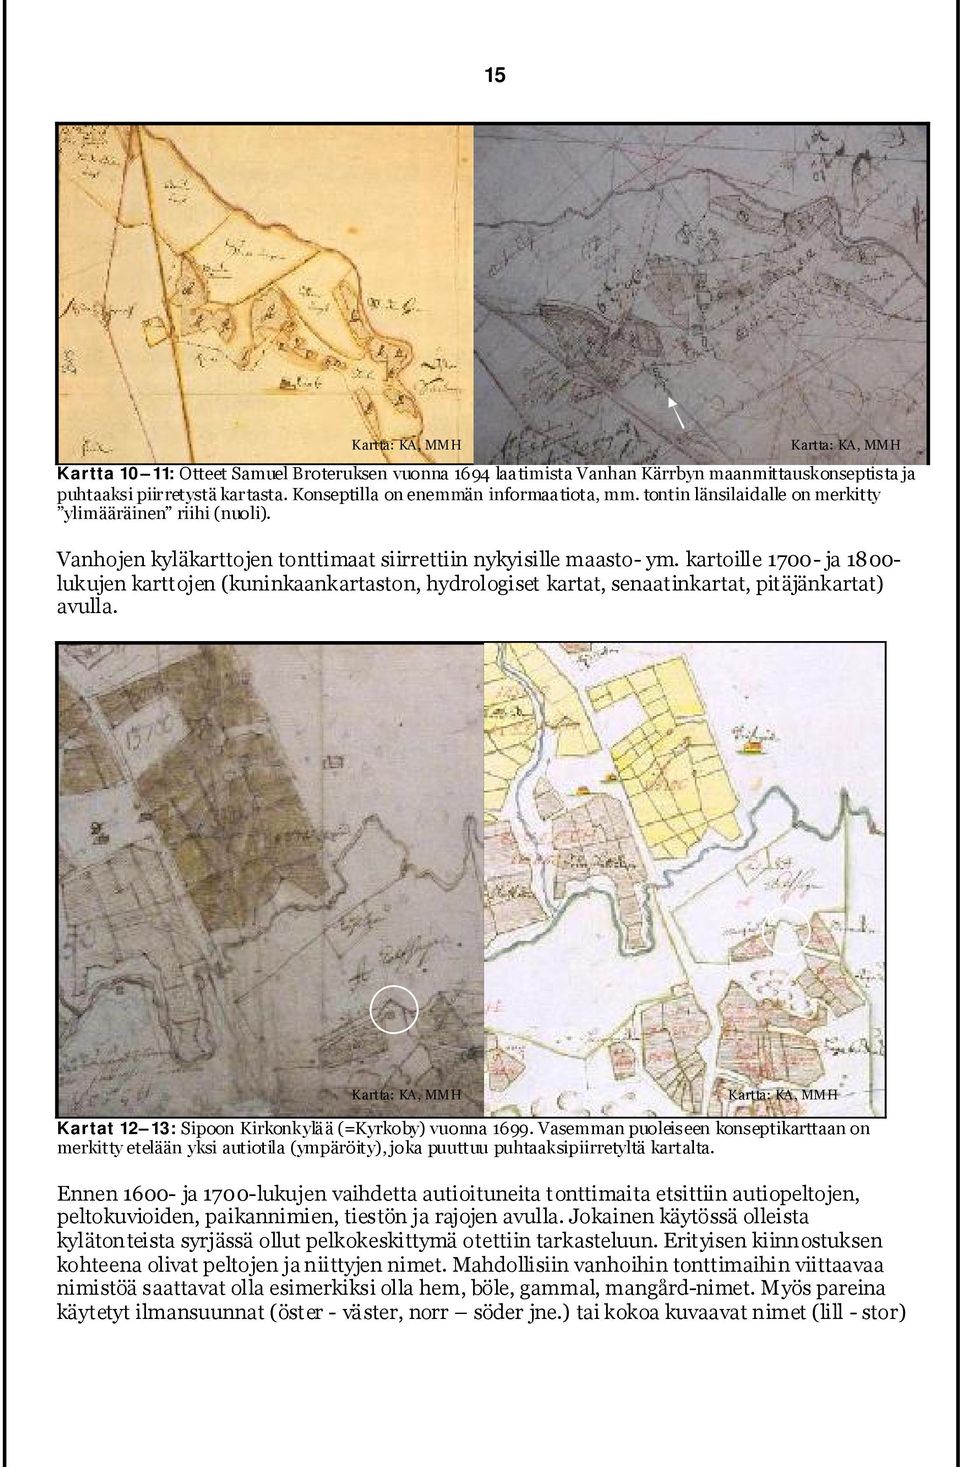 kartoille 1700- ja 1800- lukujen karttojen (kuninkaankartaston, hydrologiset kartat, senaatinkartat, pitäjänkartat) avulla.